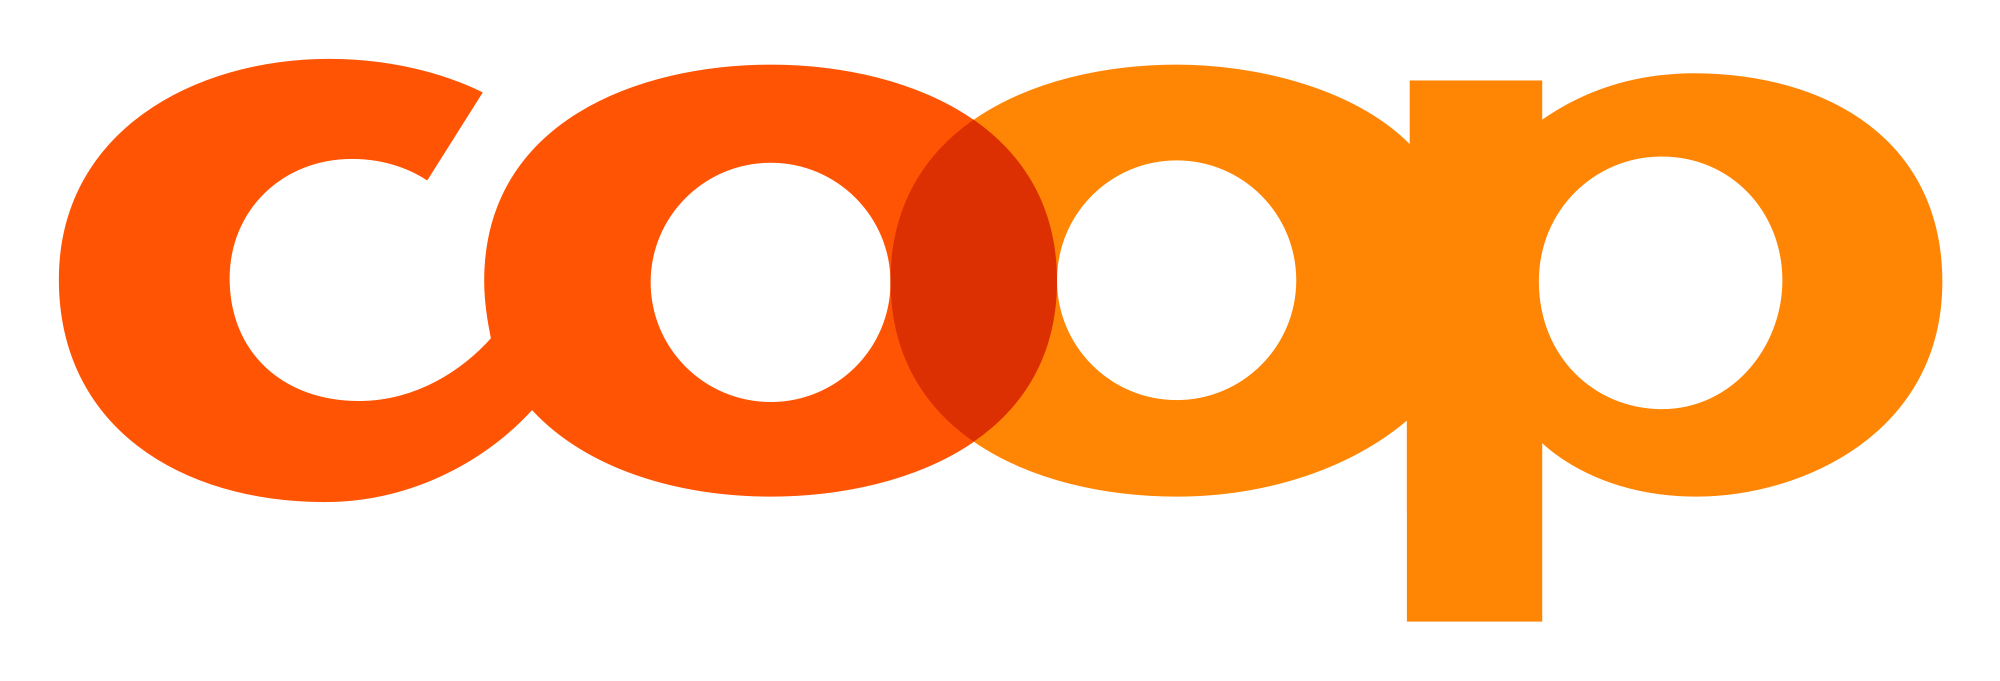 Coop Genossenschaft Logo